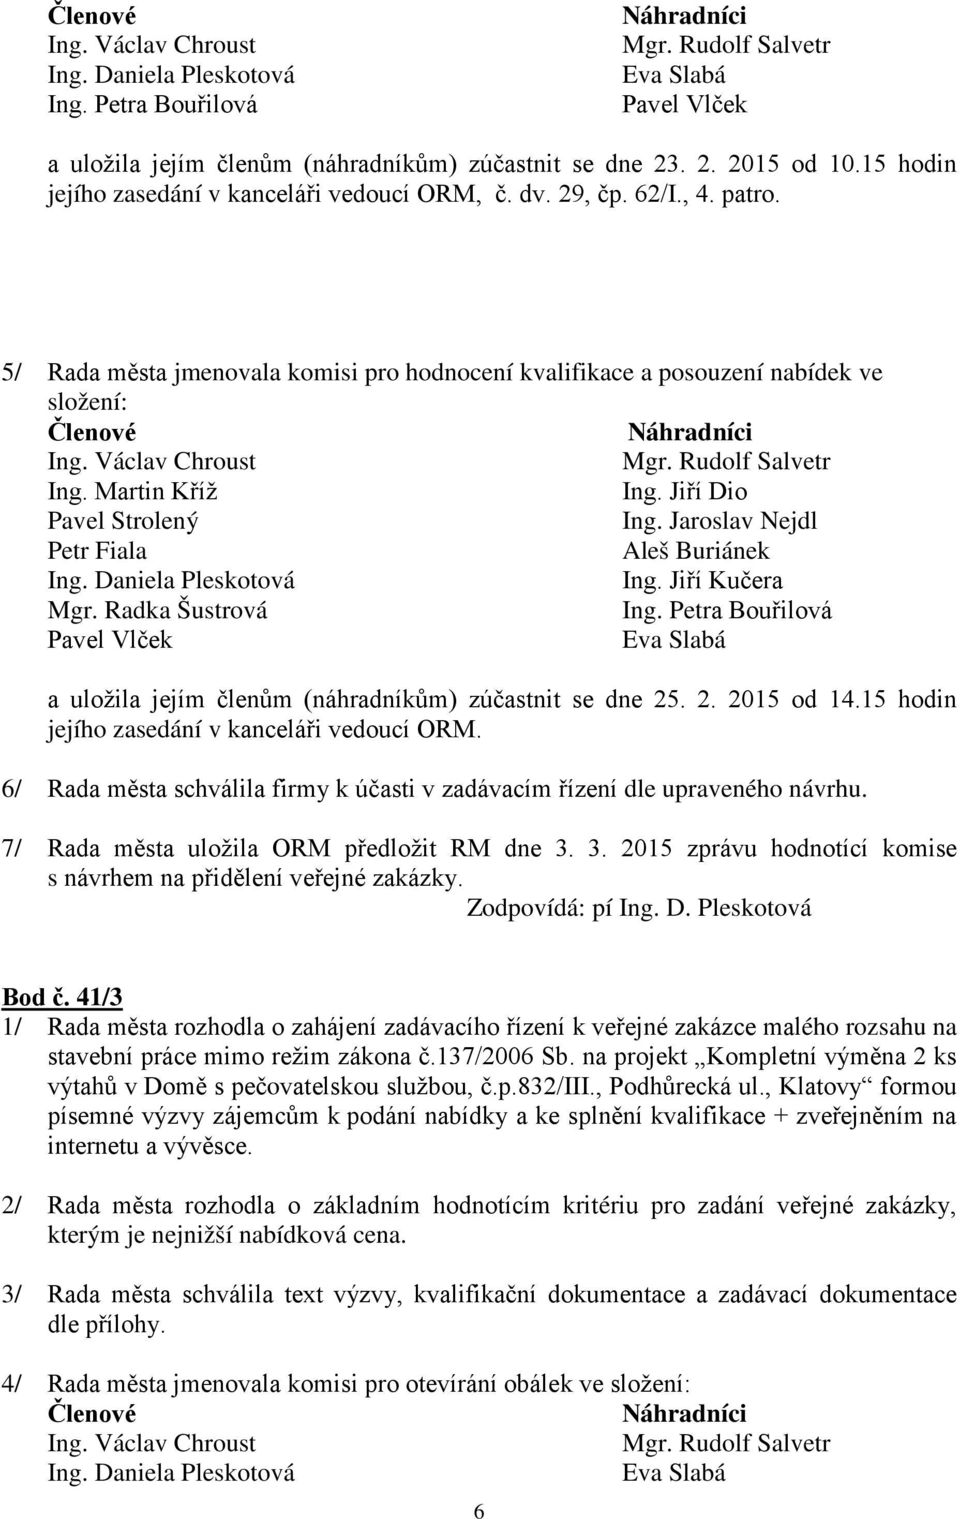 Jiří Kučera Mgr. Radka Šustrová Pavel Vlček a uložila jejím členům (náhradníkům) zúčastnit se dne 25. 2. 2015 od 14.15 hodin jejího zasedání v kanceláři vedoucí ORM.